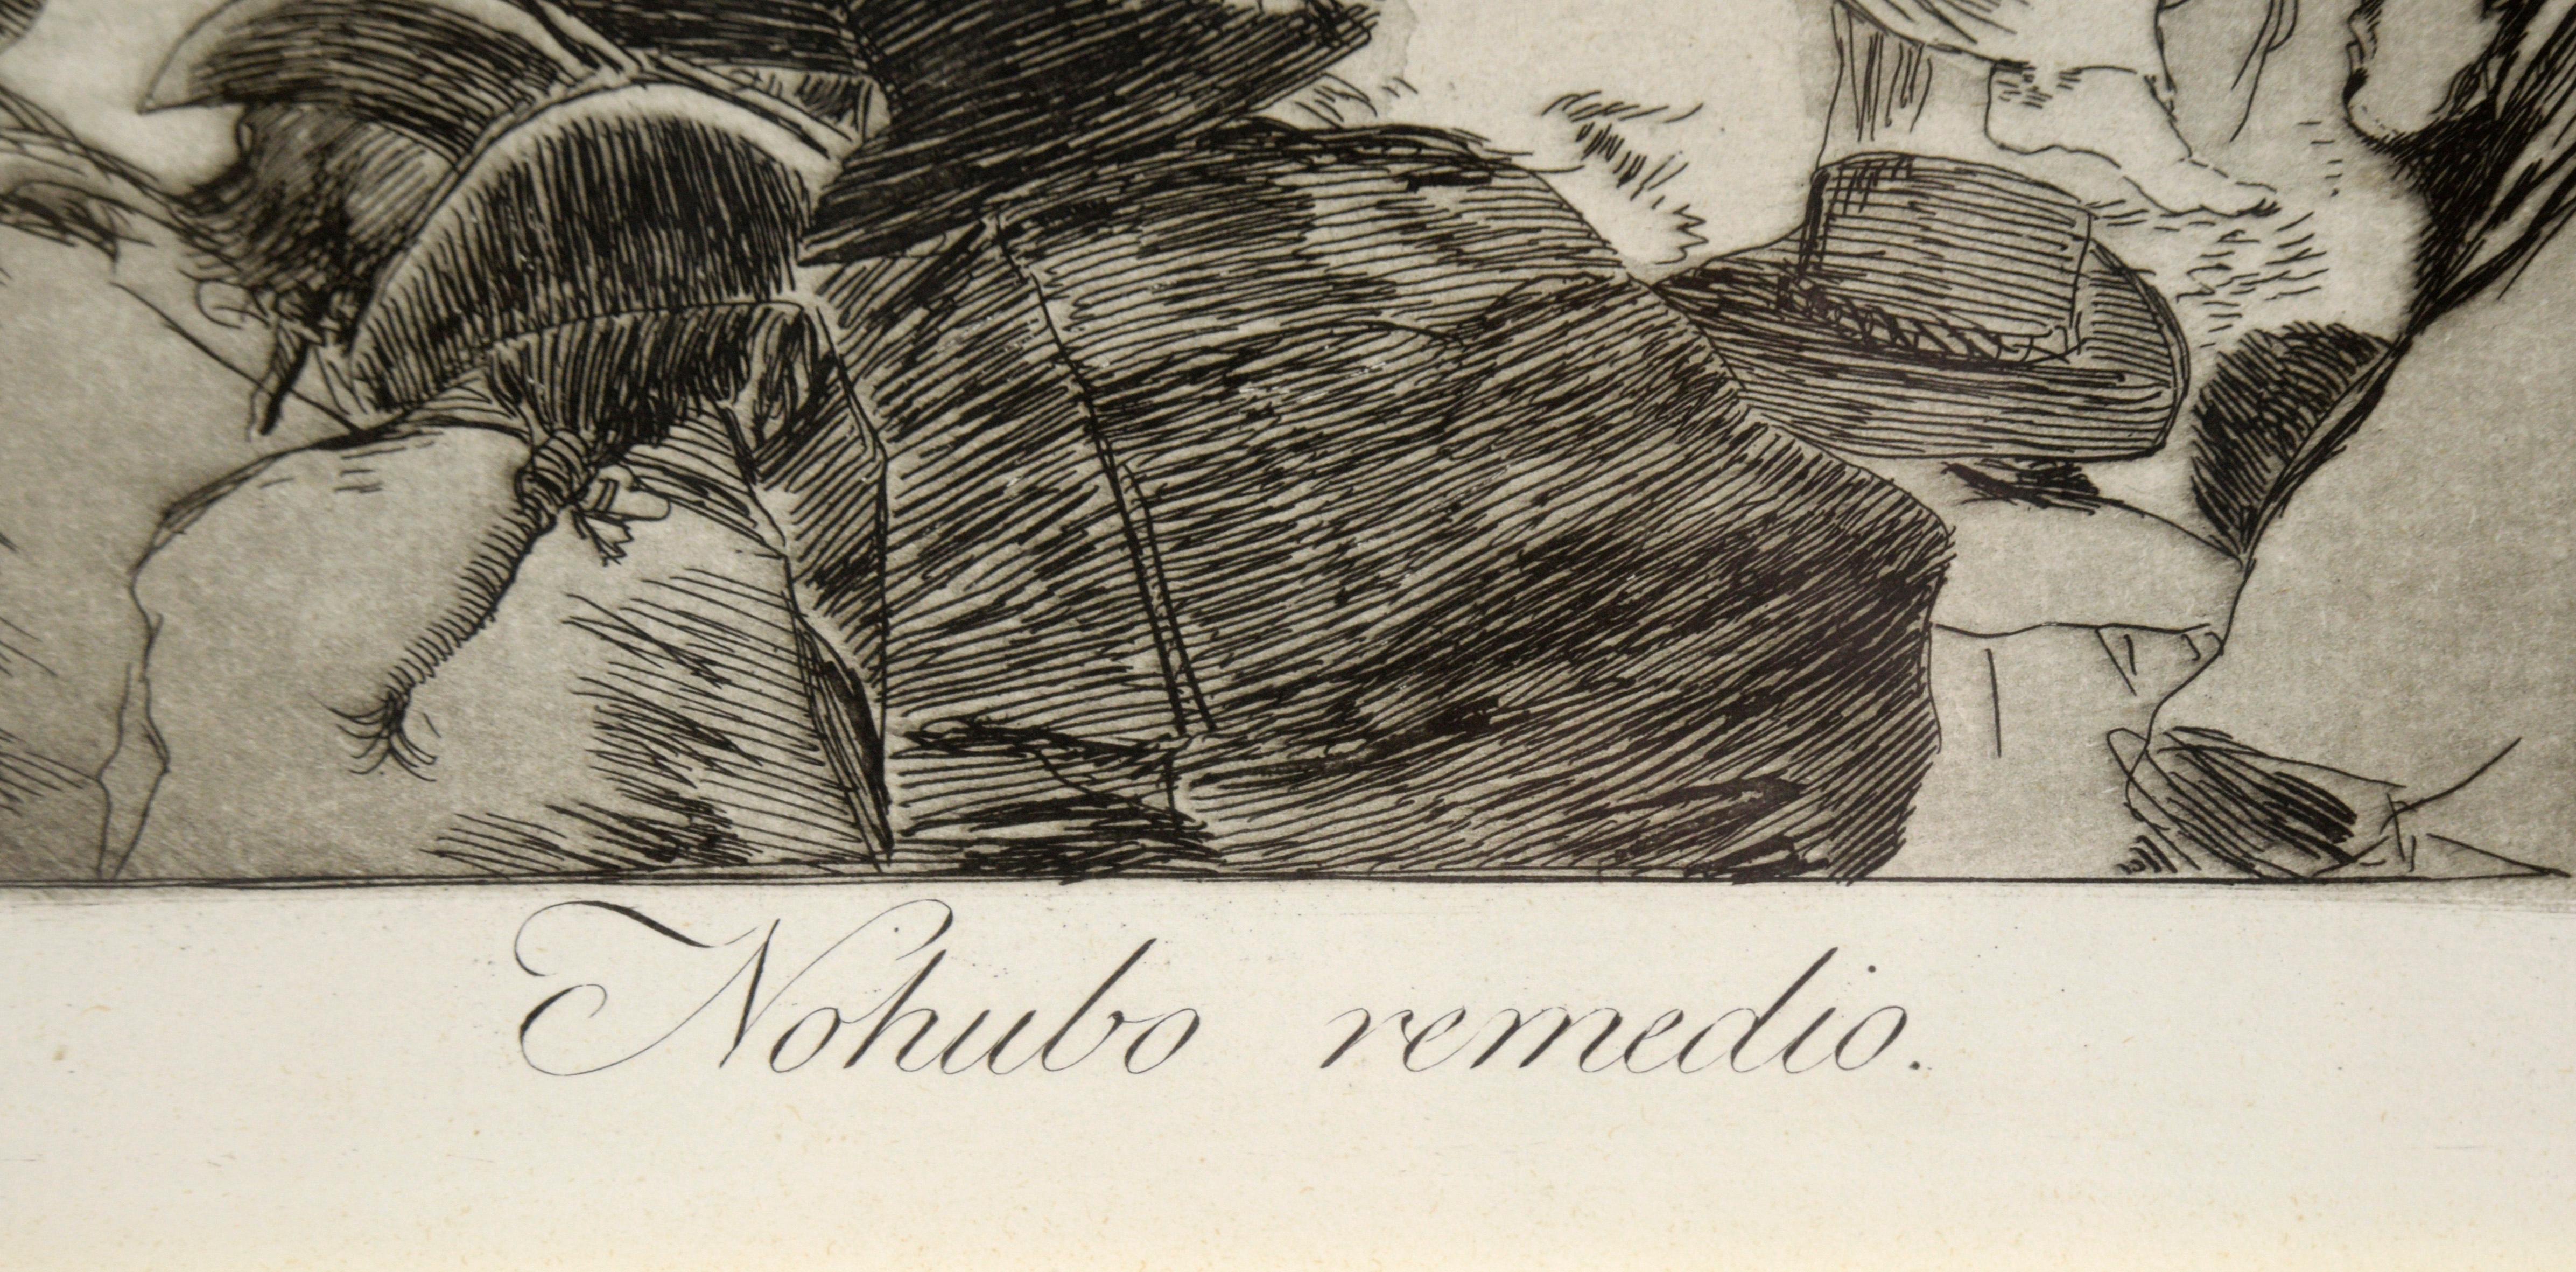 « Nohubo remedio » (Il n'y avait pas de souvenir) - eau-forte et aquatinte sur papier

3e ou 4e édition en gras, vers 1868-1878, avec des aquatintes brunies, des pointes sèches et des gravures de Franciso de Goya (espagnol, 1746-1828). Belle